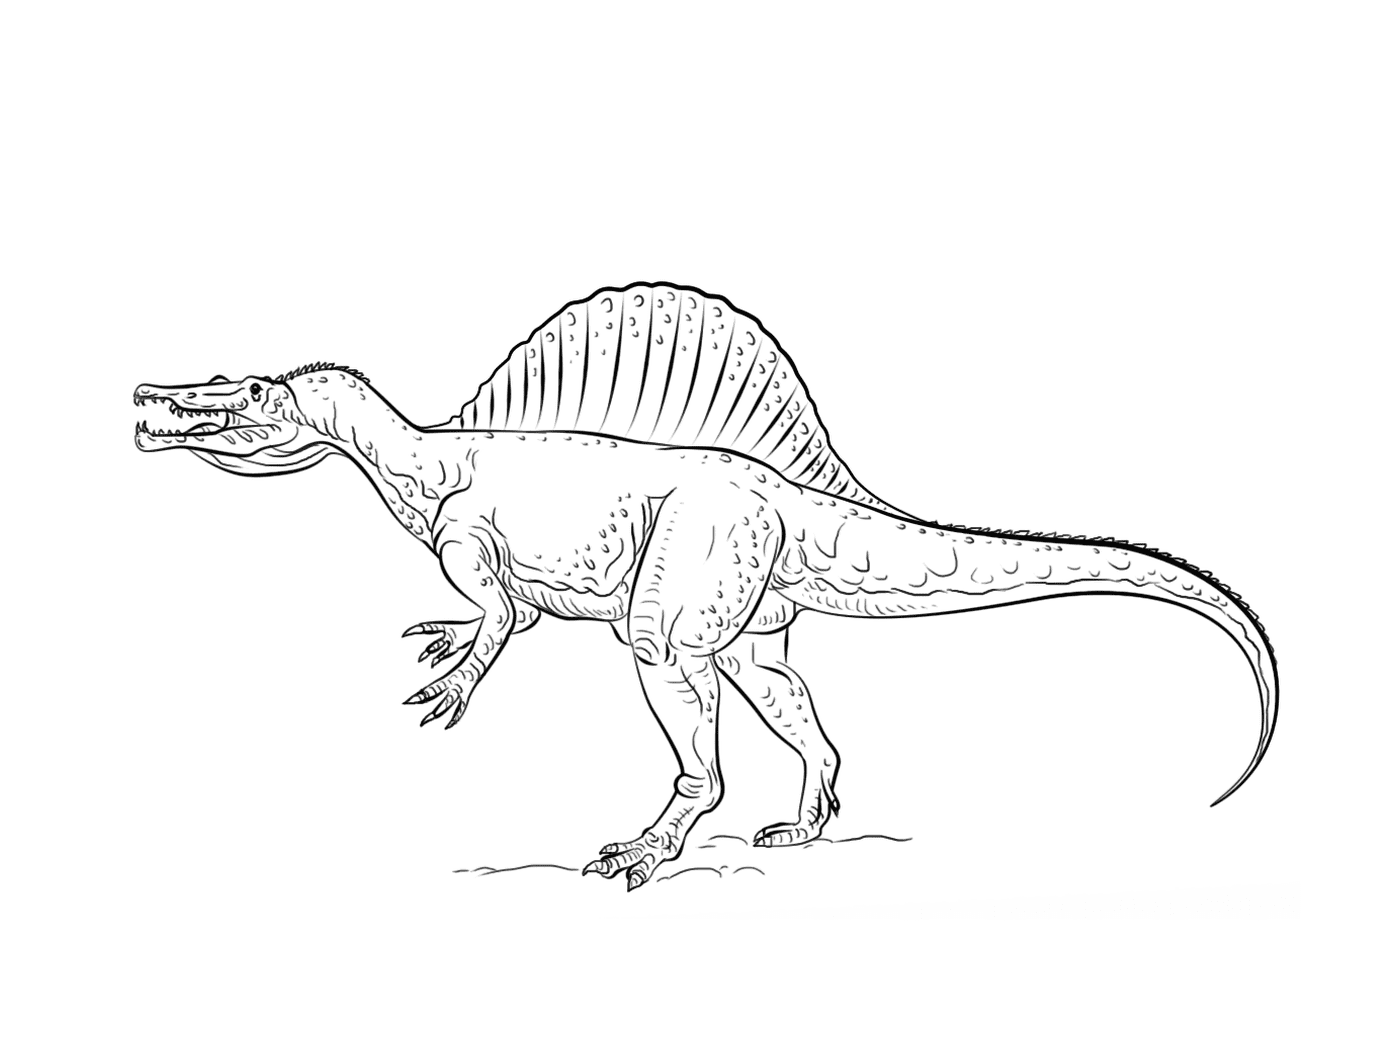  脊柱龙 令人印象深刻的恐龙 